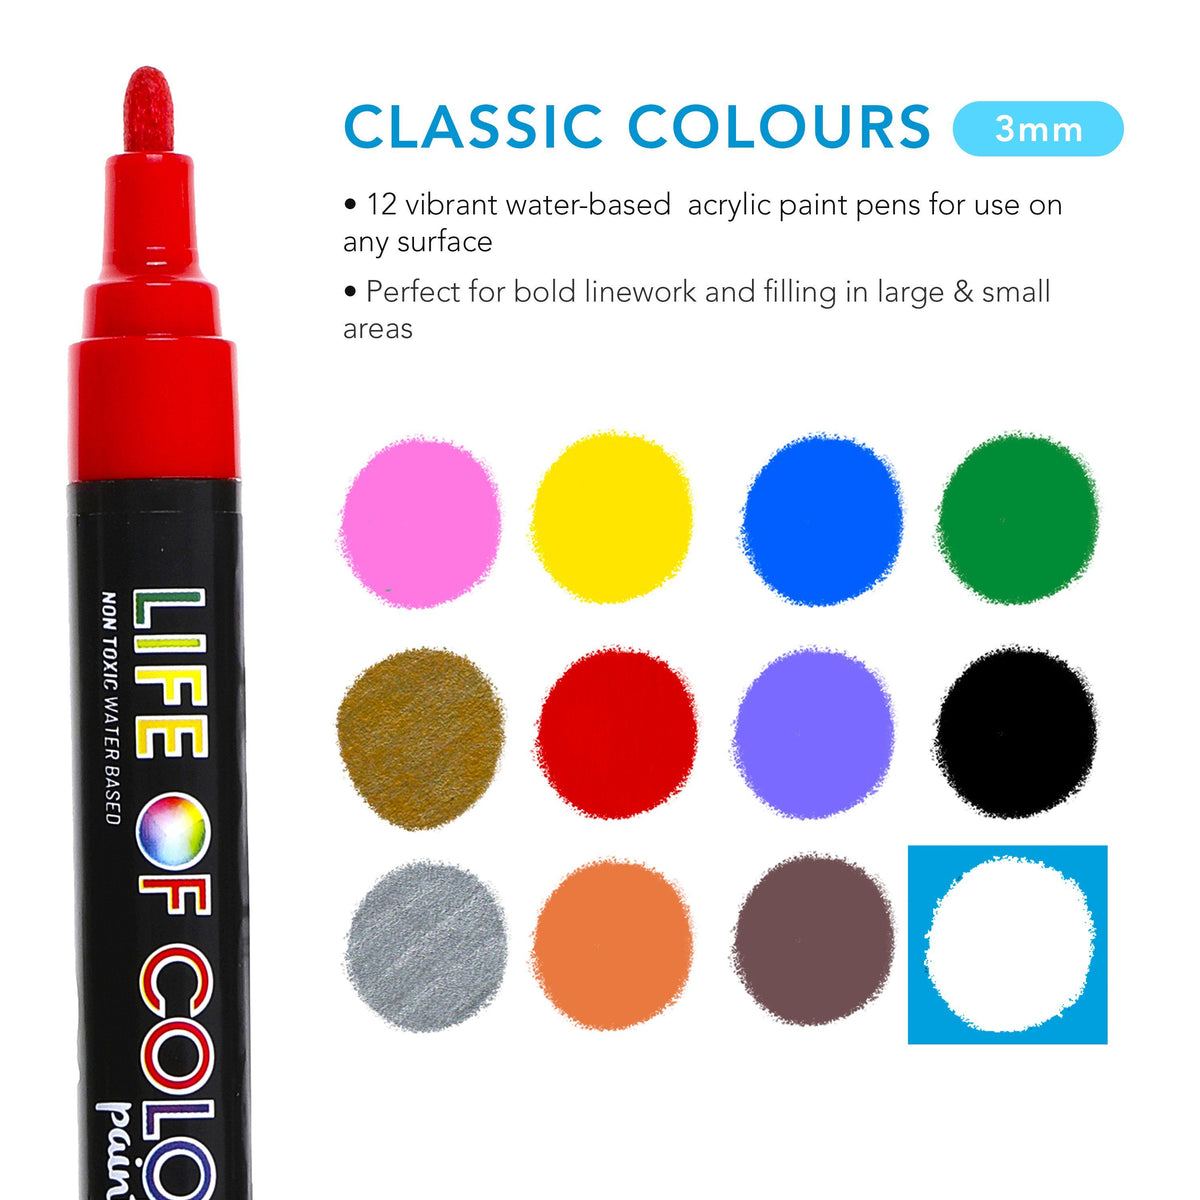 Classic Colour Paint Pens - Medium Tip Pen Sets Life of Colour